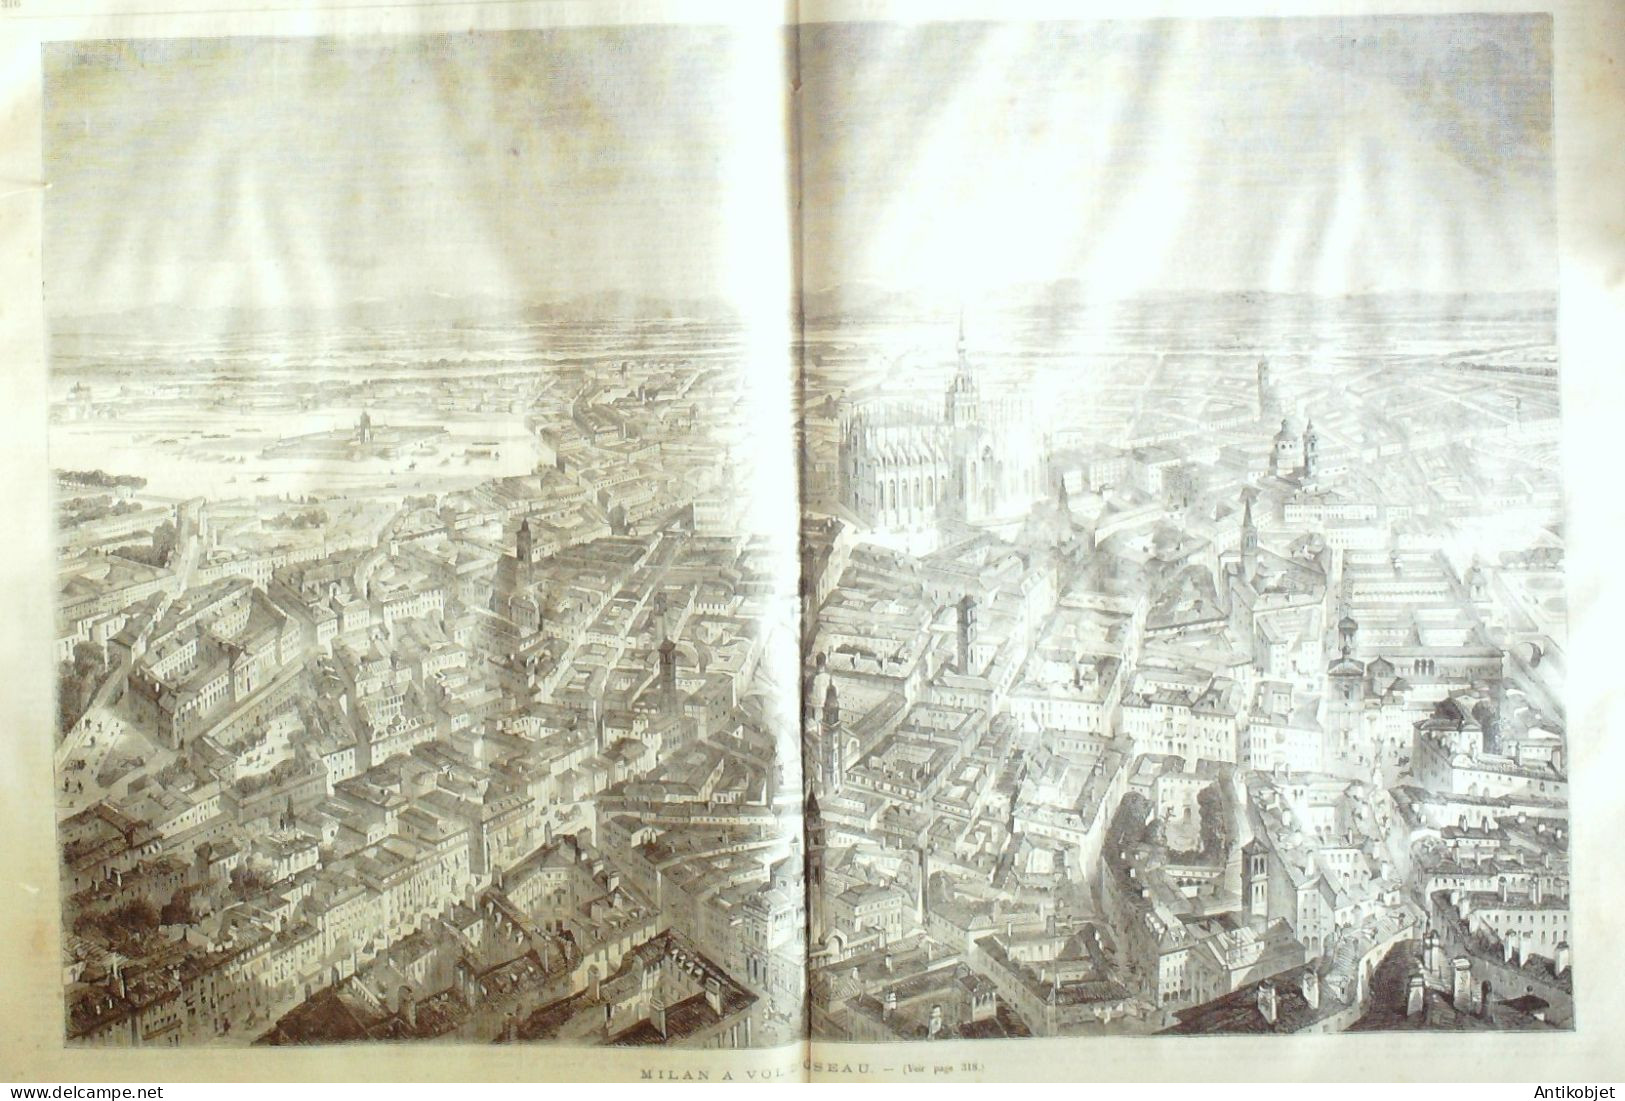 Le Journal Illustré 1865 N°86 Nîmes (30) Foire Aux ânes  Laon (02) Milan Général Prim - 1850 - 1899